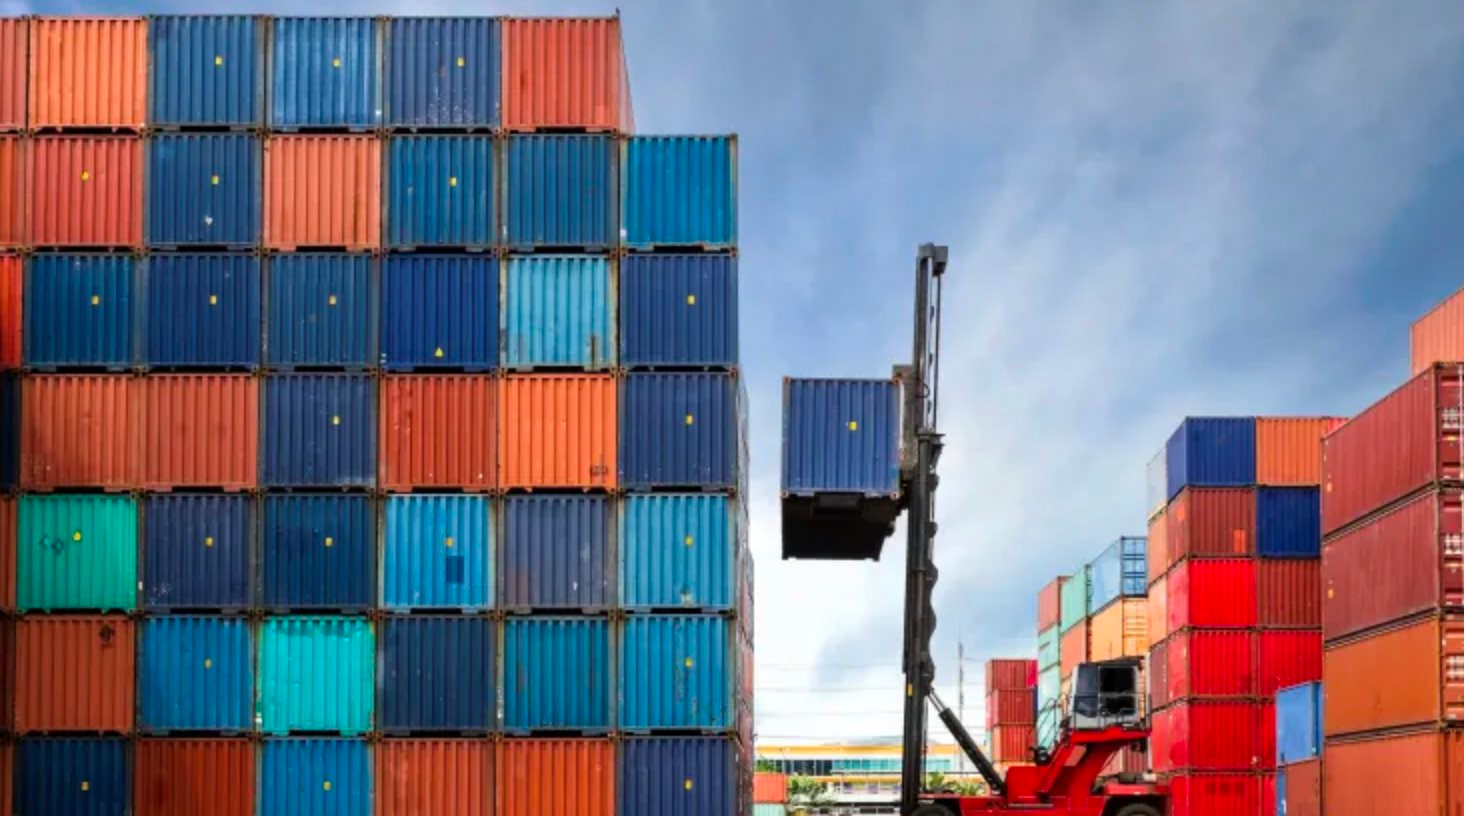 Nỗi lo chồng chất của hệ thống vận tải biển: Thừa mứa container mang theo dấu hiệu của suy thoái toàn cầu 